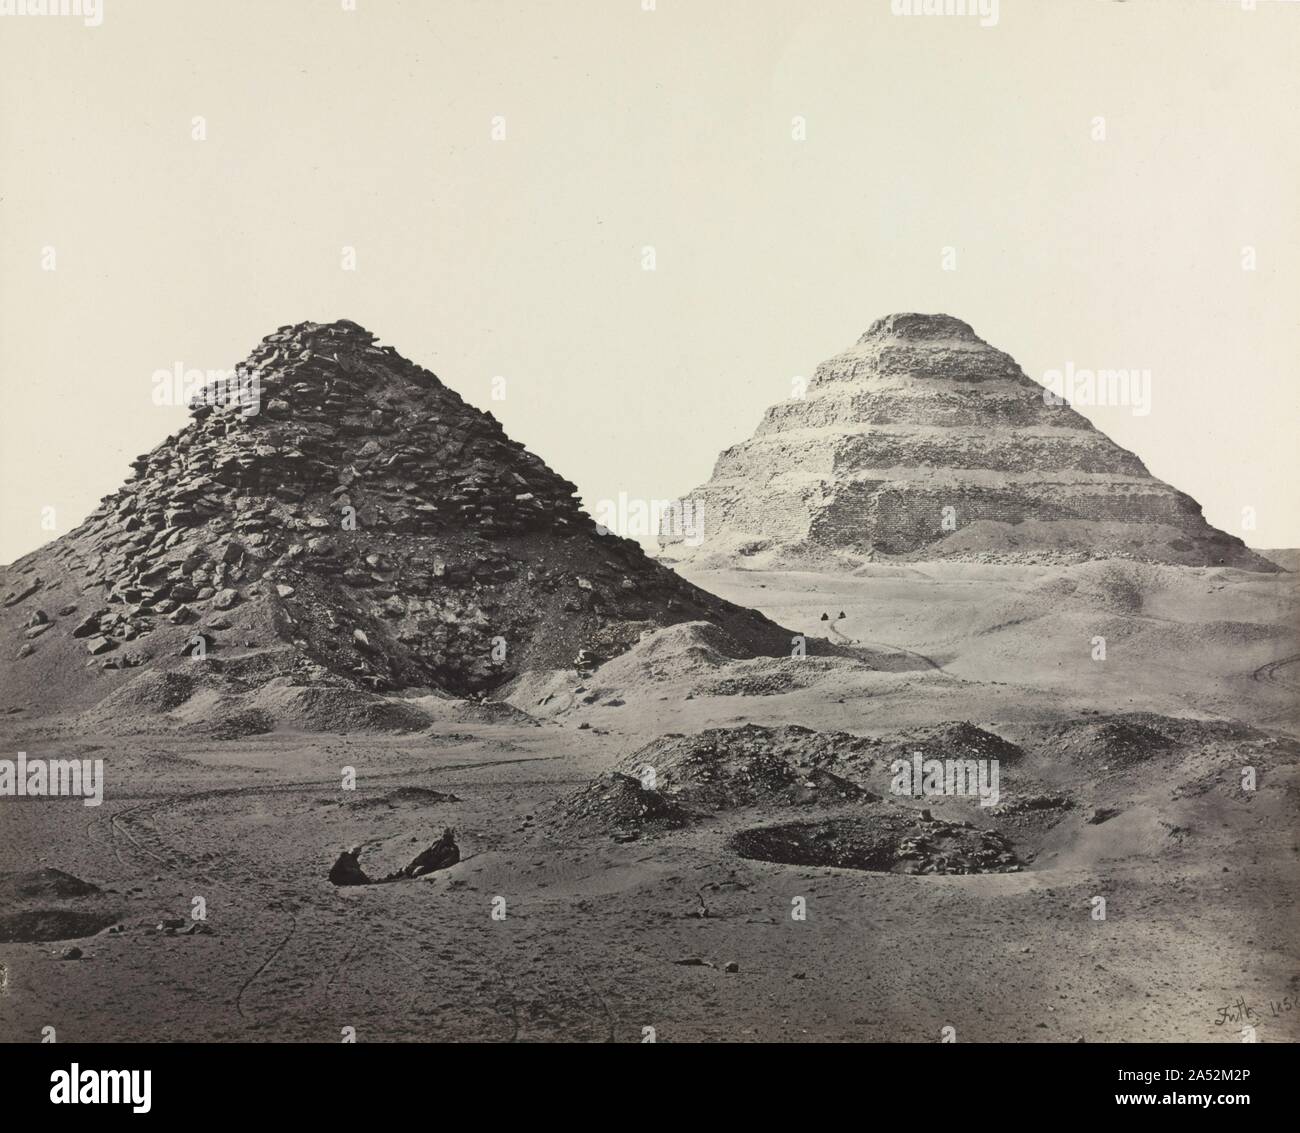 Les Pyramides de Saqqara, à partir du nord-est, 1858. Frith a été le premier photographe en Egypte pour utiliser avec succès le collodion humide, introduit en 1851. Ses négatifs sur plaque de verre ont produit des images plus nettes, plus détaillées que les cartes papier. Il a même créé la plaque mammouth imprime, que cette taille est appelée, ce qui exige aussi grande des négatifs sur plaque de verre. La poursuite du processus&# x2019;s exigeant chimie en Égypte&# x2019;s du soleil brûlant était d'essayer. Frith a cherché refuge dans des tombes parfois pour l'air frais et l'obscurité pour traiter ses planches. "Me pousser en arrière sur mes mains et les genoux, Banque D'Images